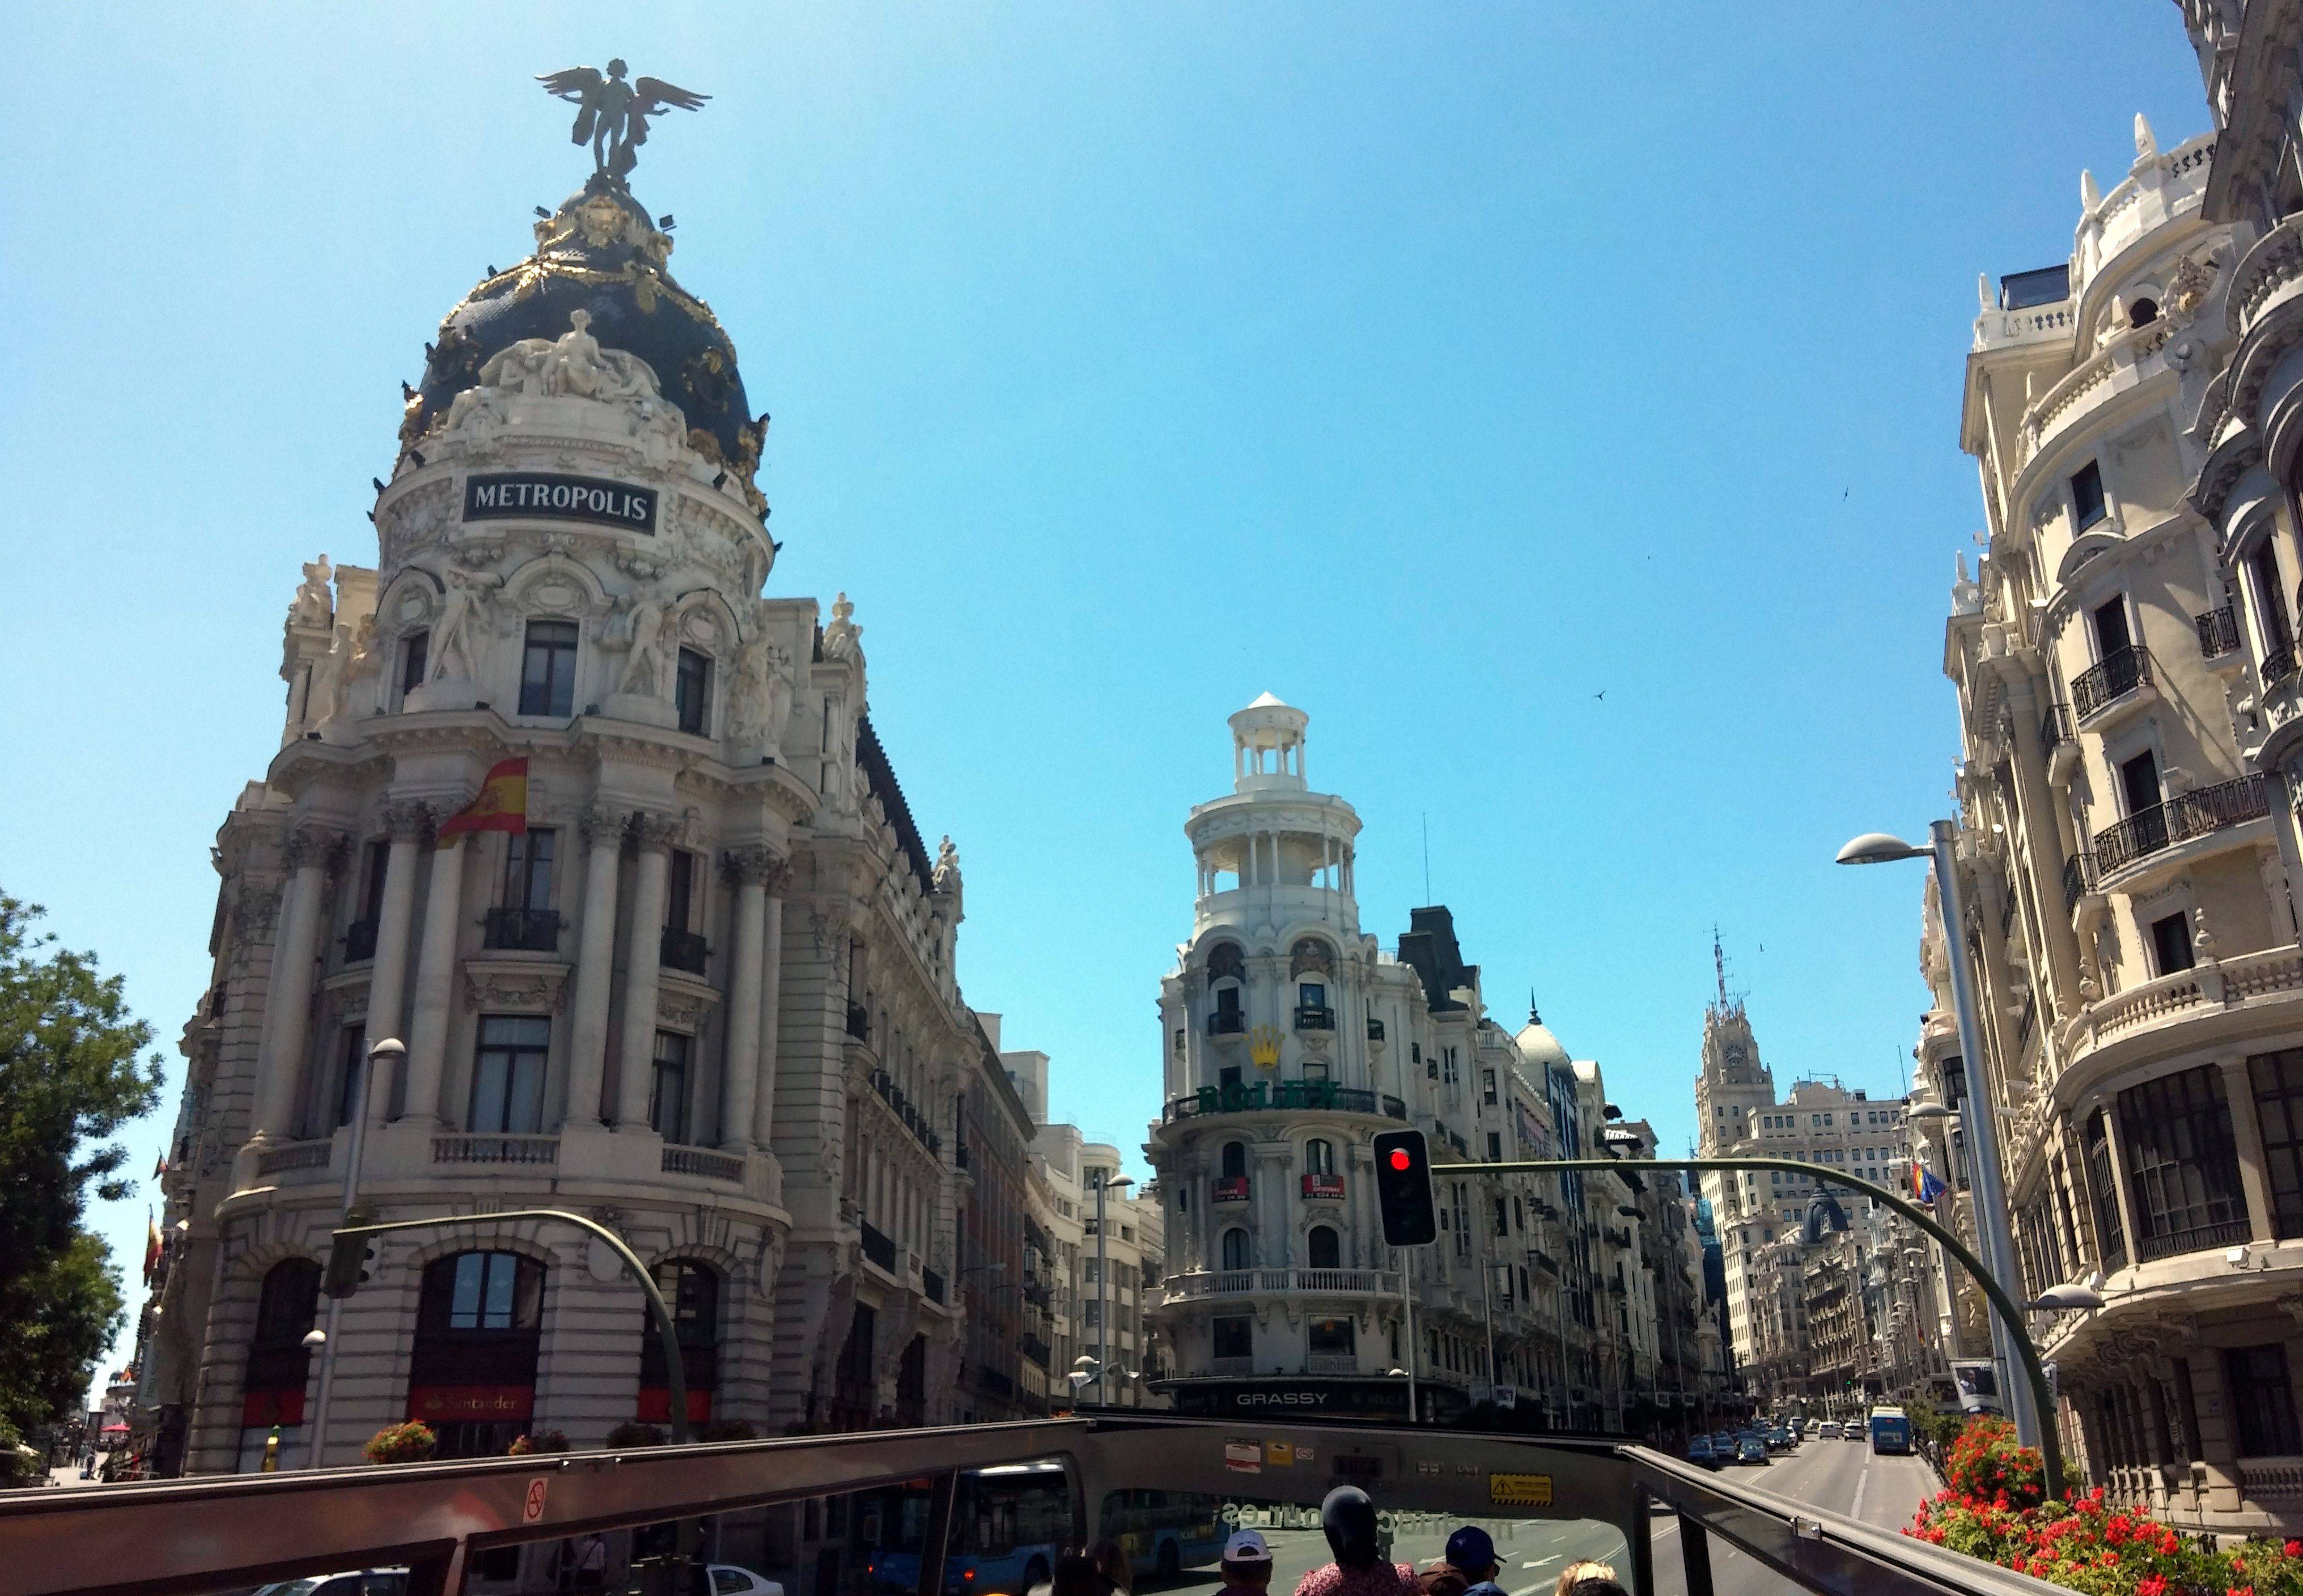 Общественный транспорт в мадриде, испания - советы путешественникам про автобусы, метро и трамваи в городе